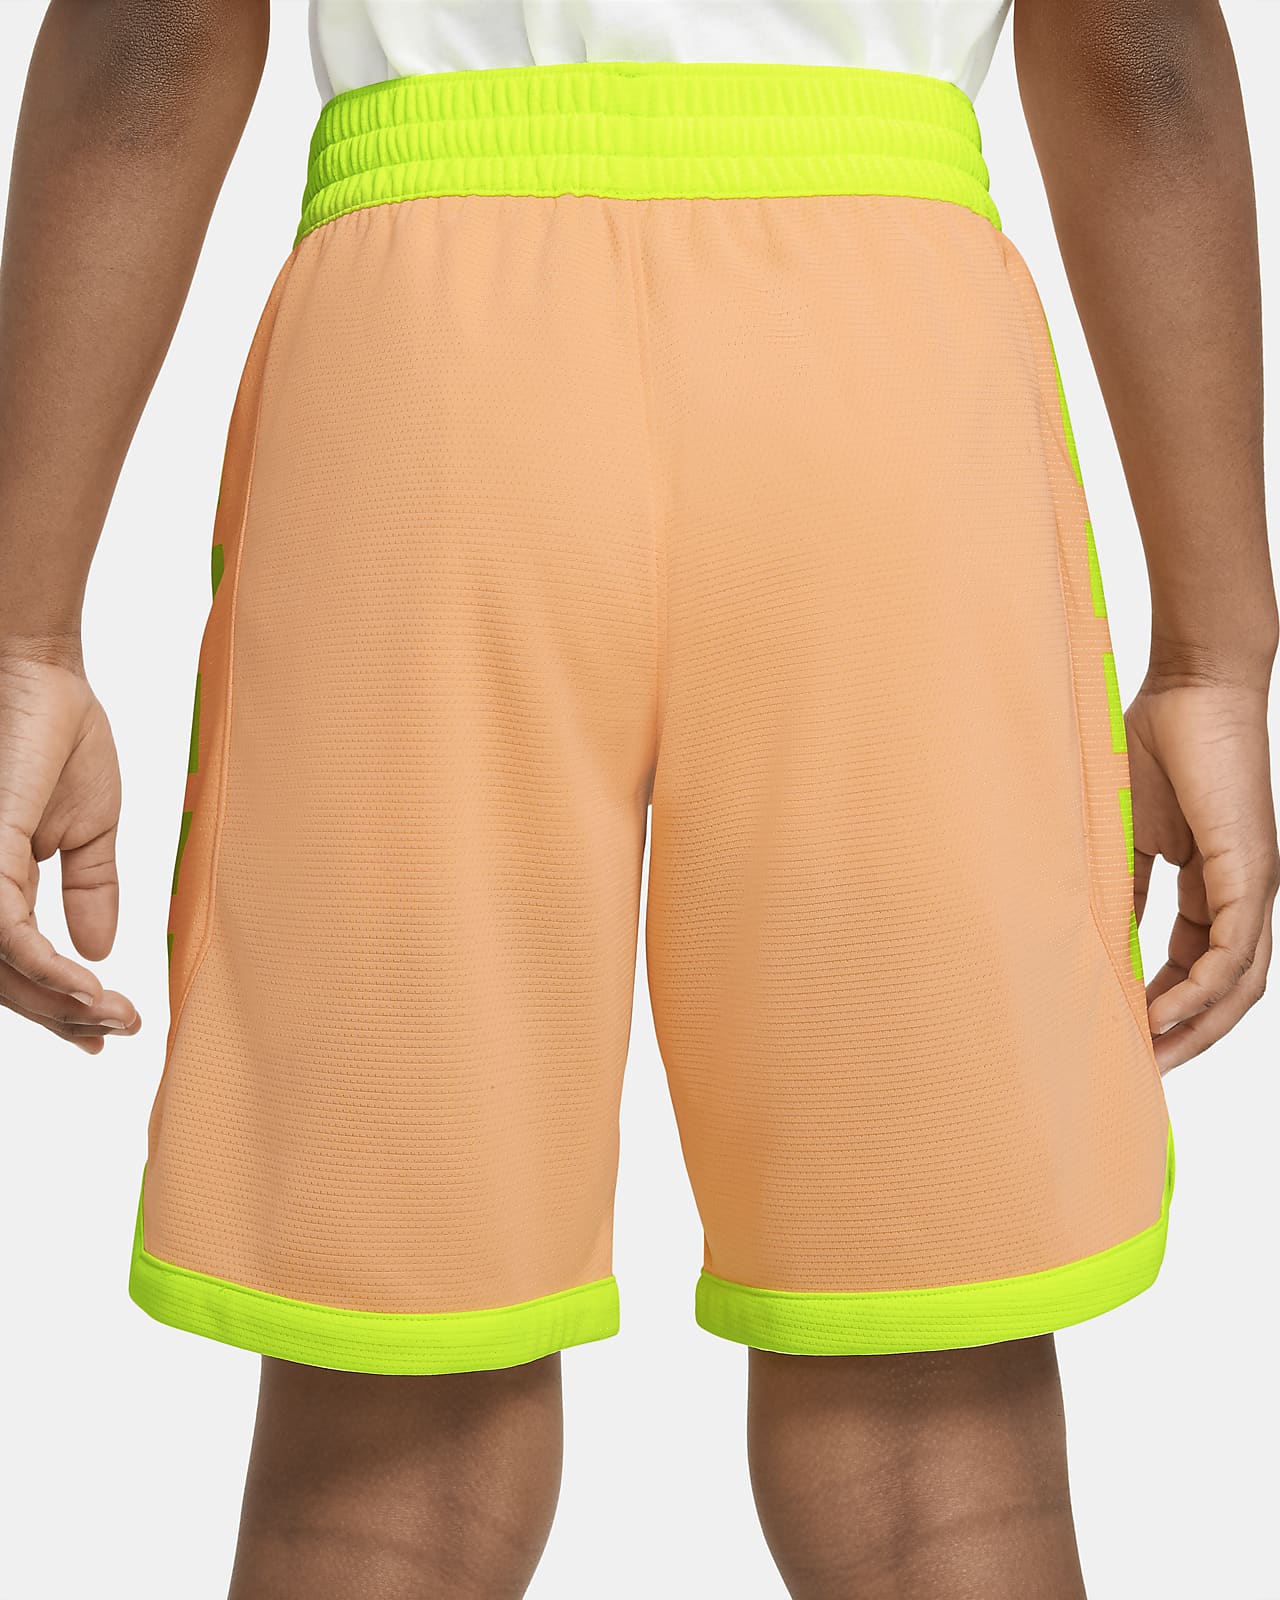 orange nike elite shorts